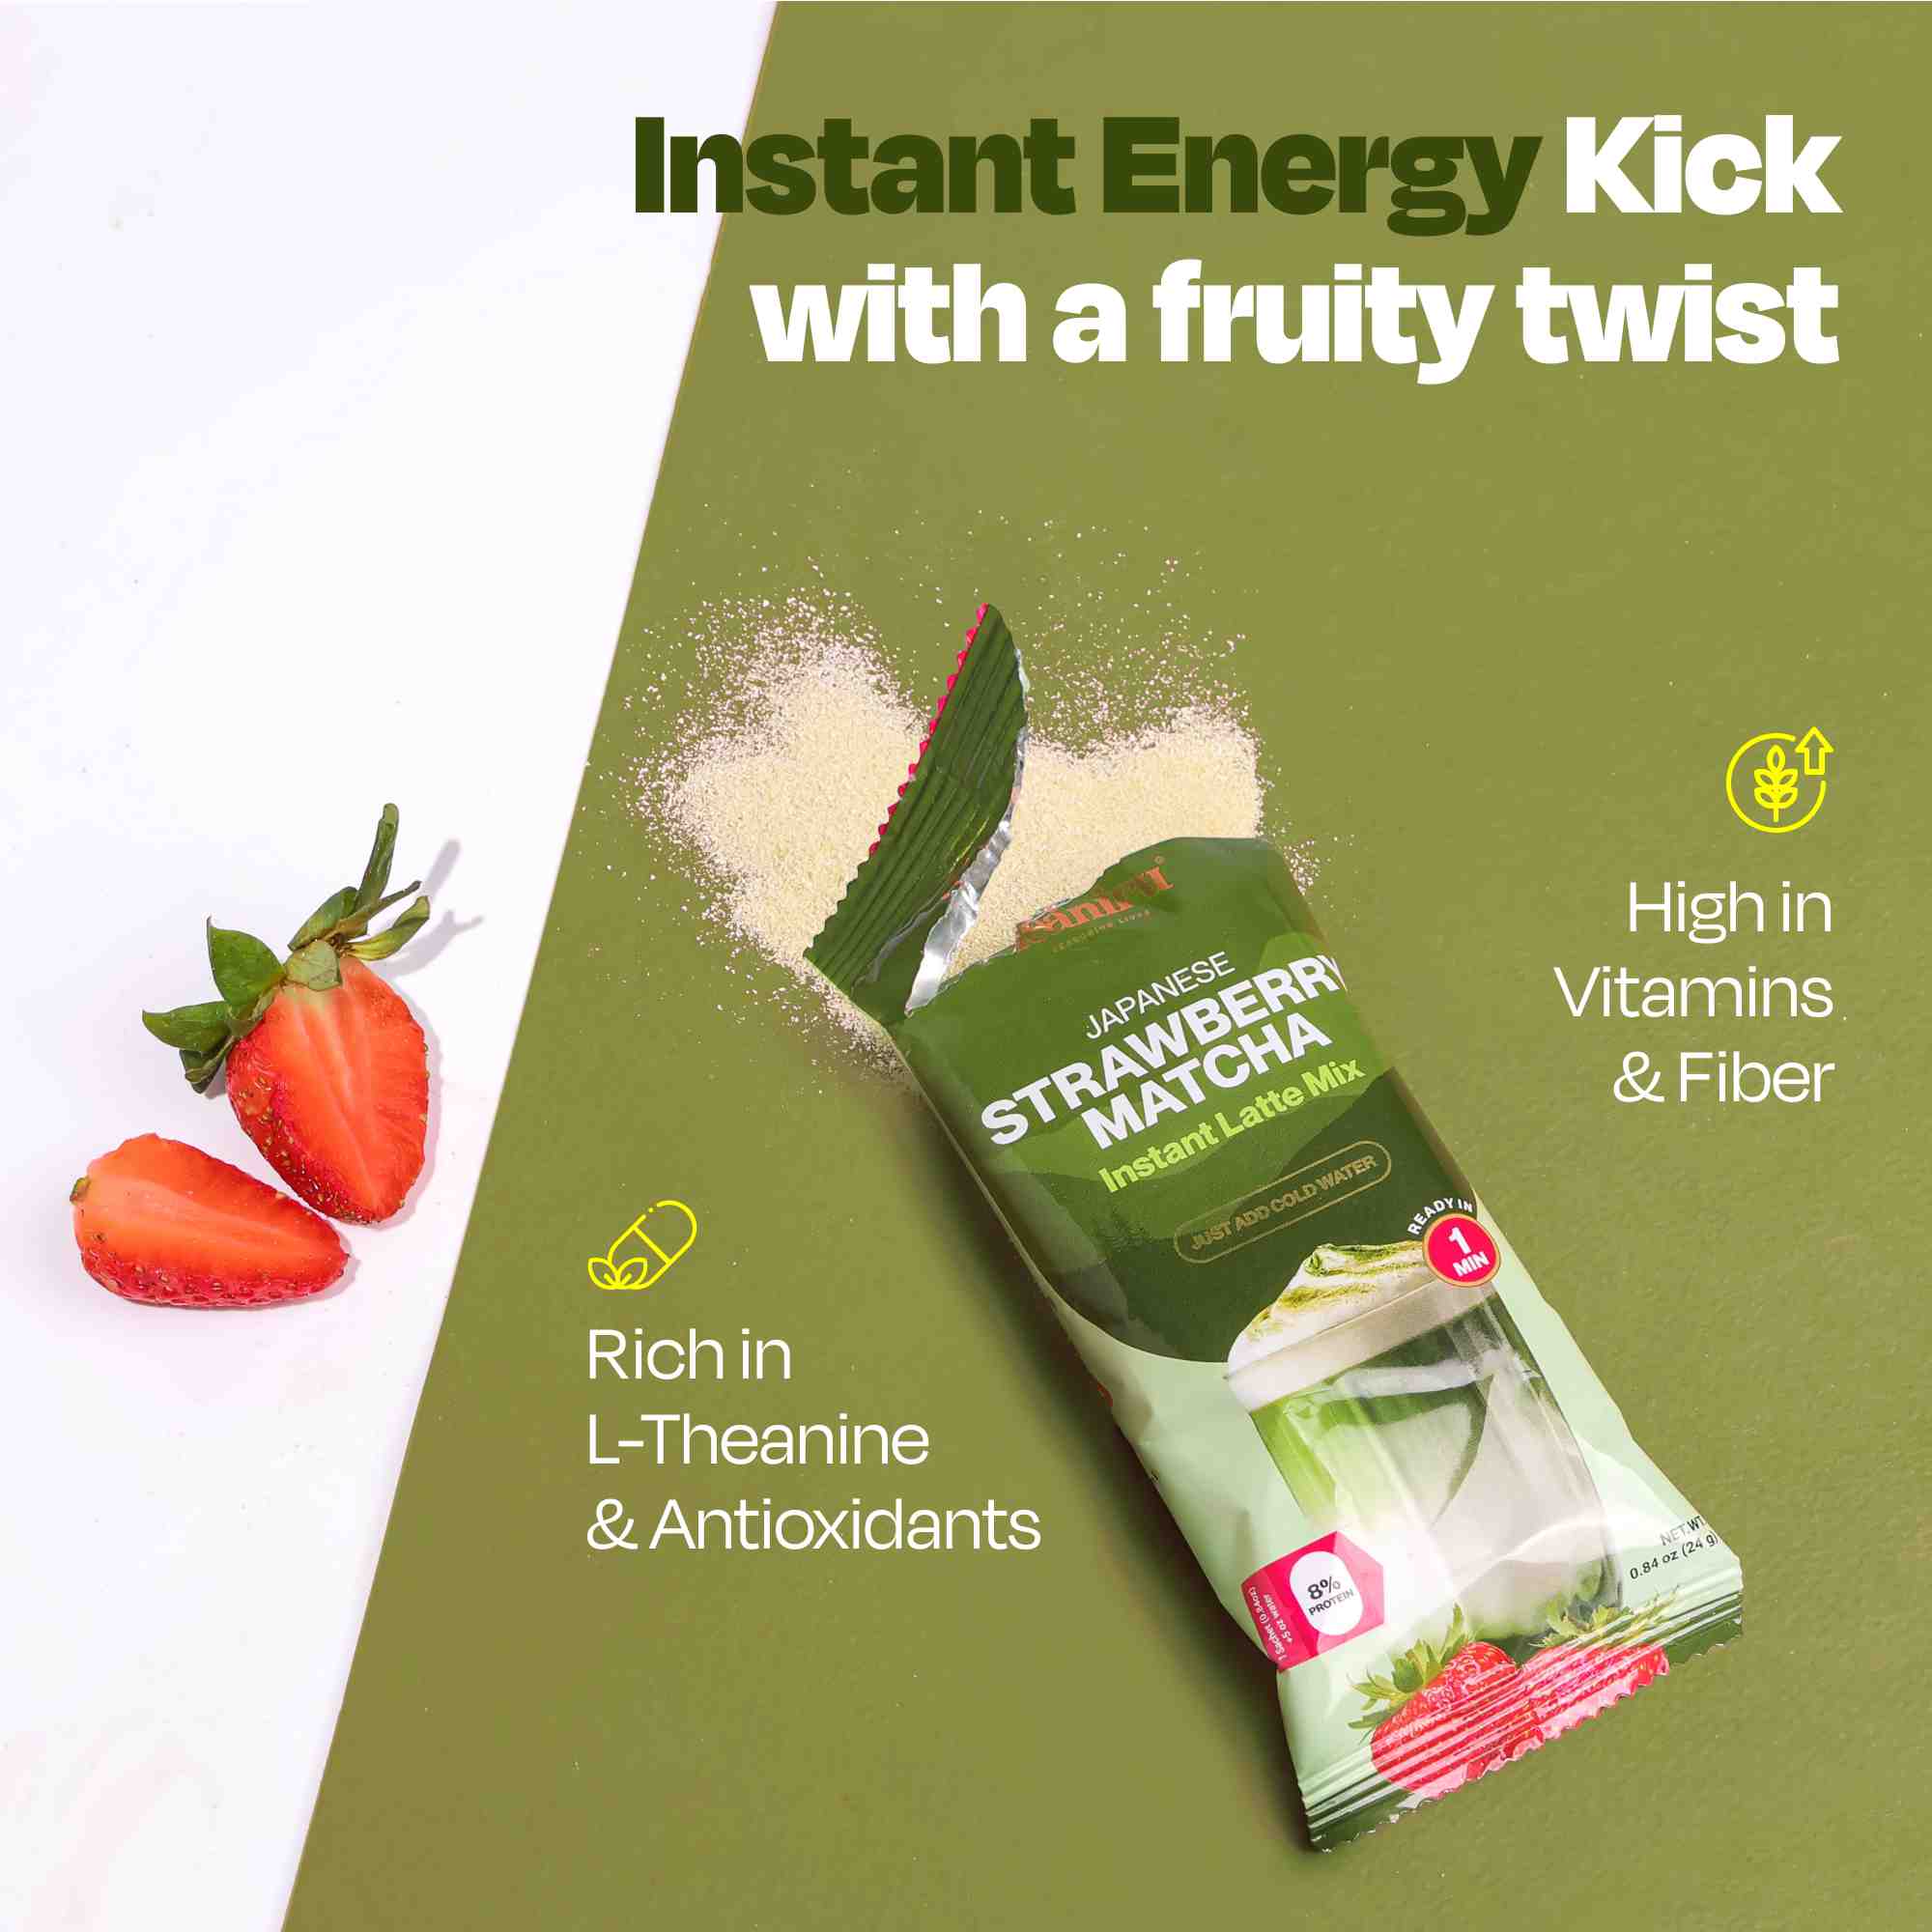 Strawberry Matcha Latte Mix